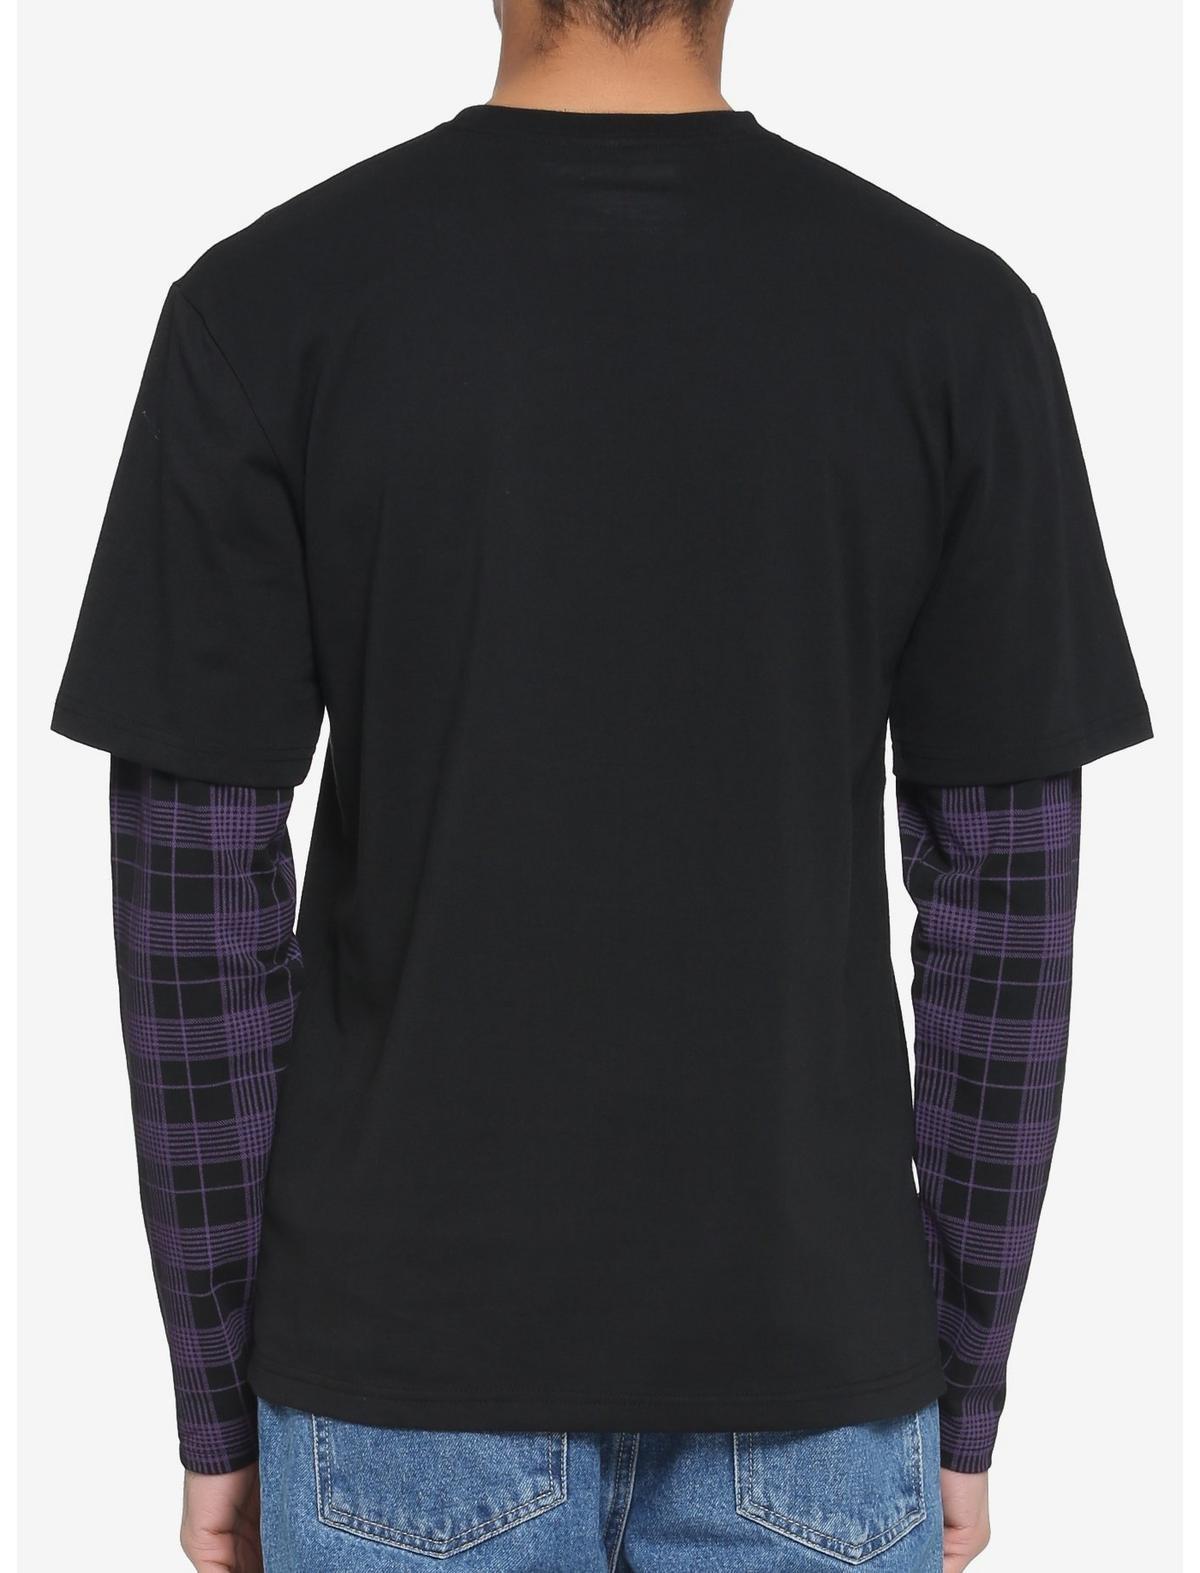 Black & Purple Plaid Sleeve Twofer Long-Sleeve T-Shirt, PURPLE  BLACK, alternate